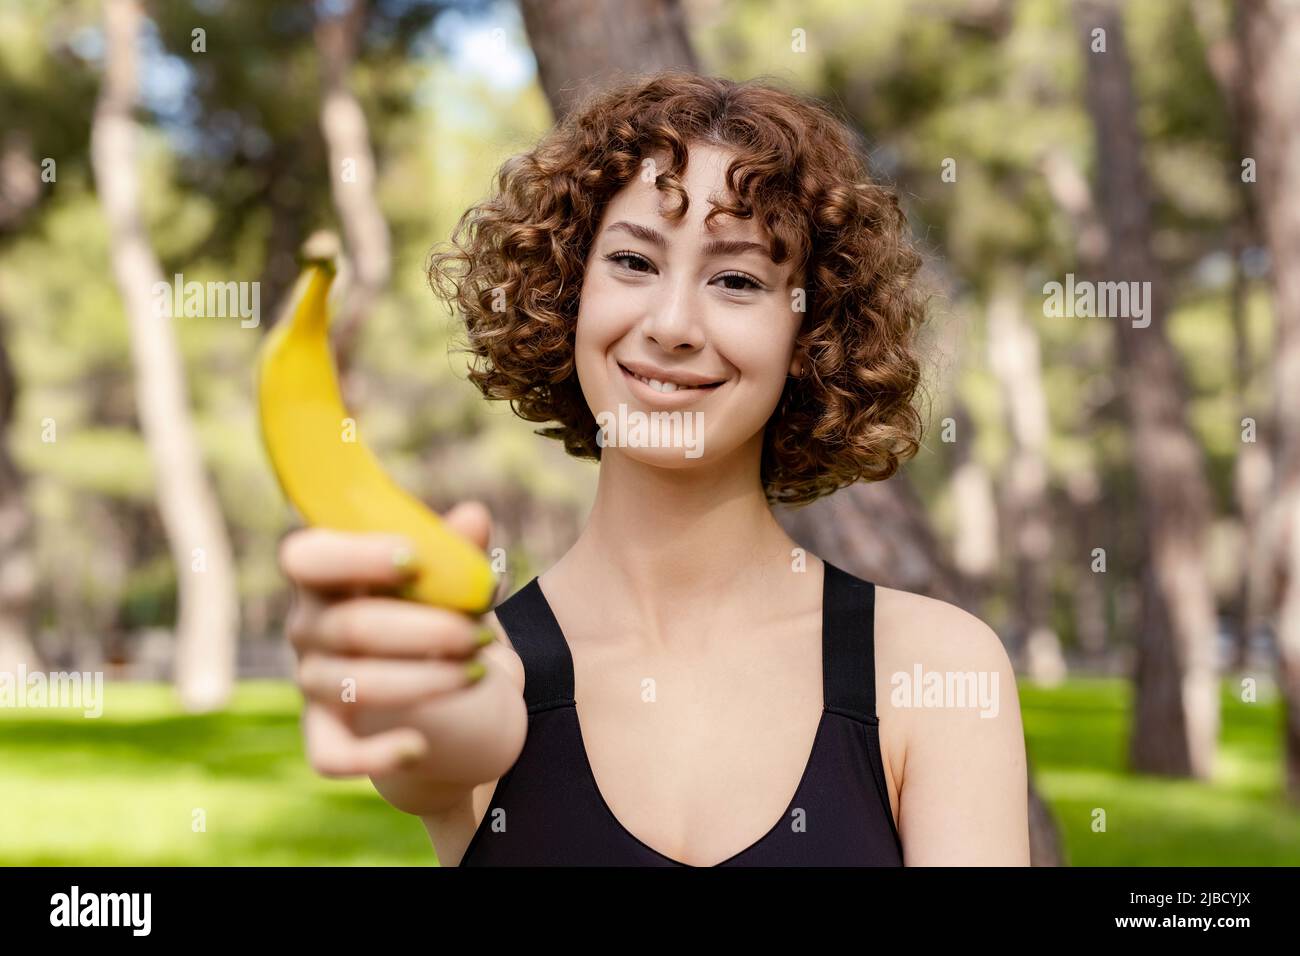 Junge Rotschopf-Frau in einem schwarzen Sport-BH, die auf dem Stadtpark steht, im Freien eine gesunde Banane hält und mit einem Smiley auf die Kamera schaut. Outdoo Stockfoto